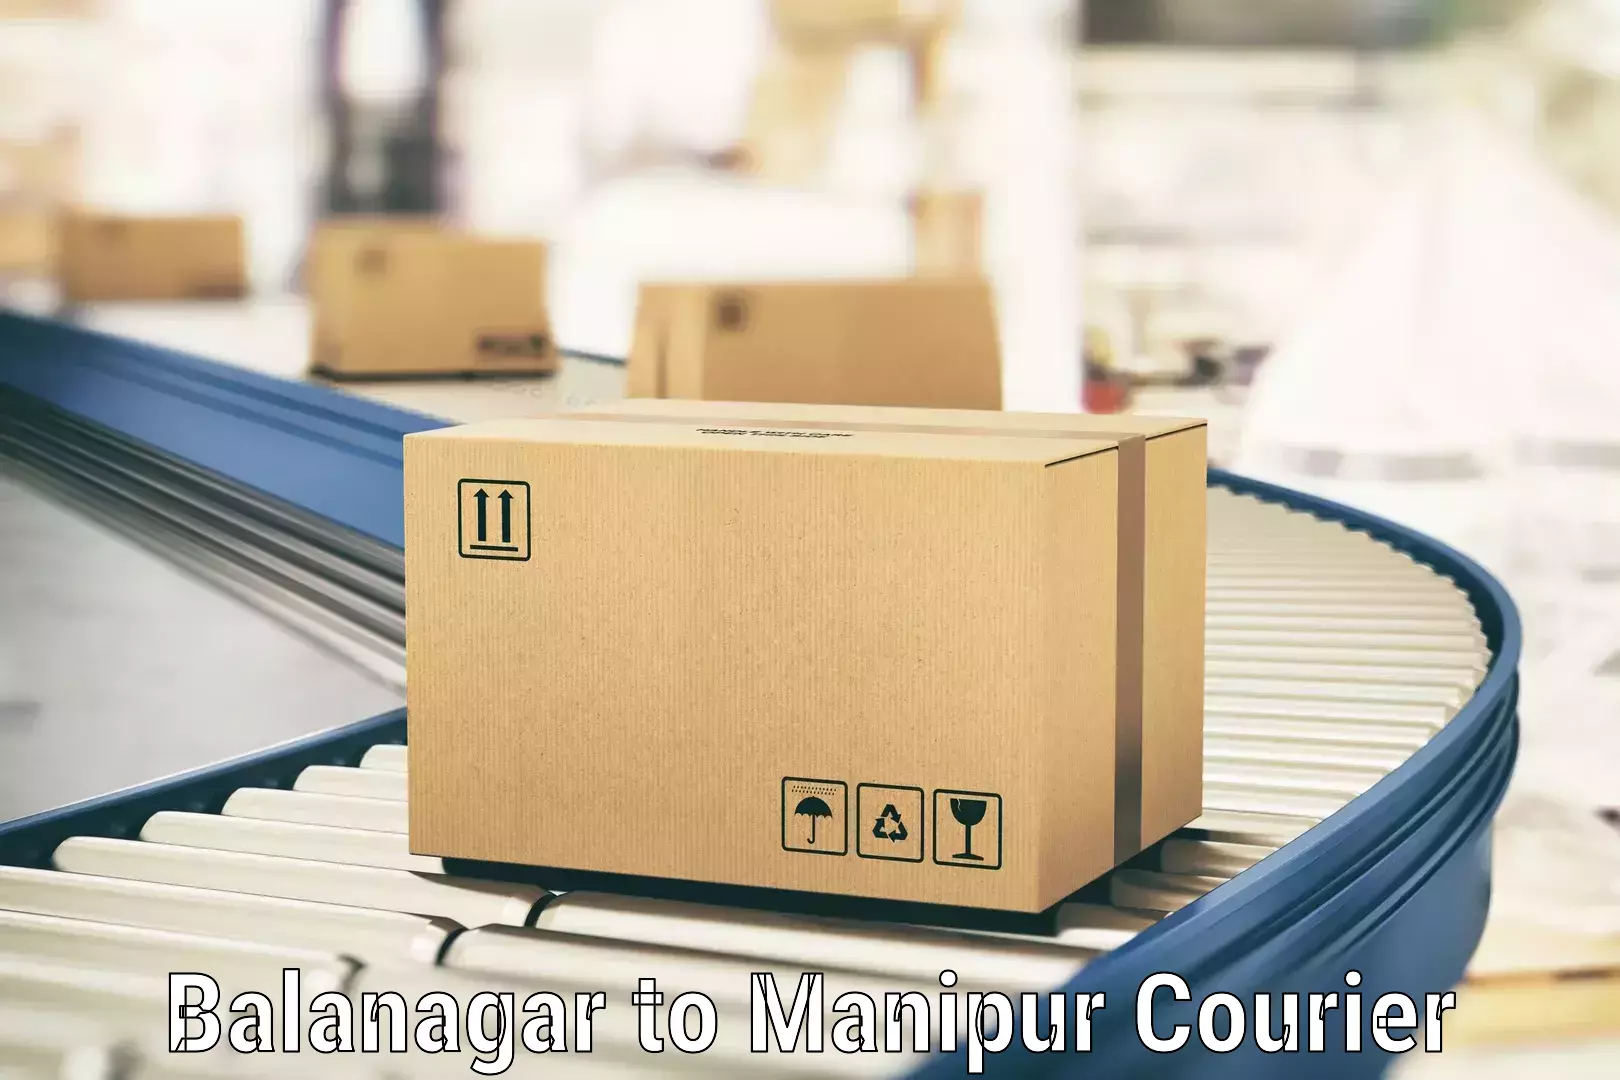 High-capacity courier solutions in Balanagar to Moirang